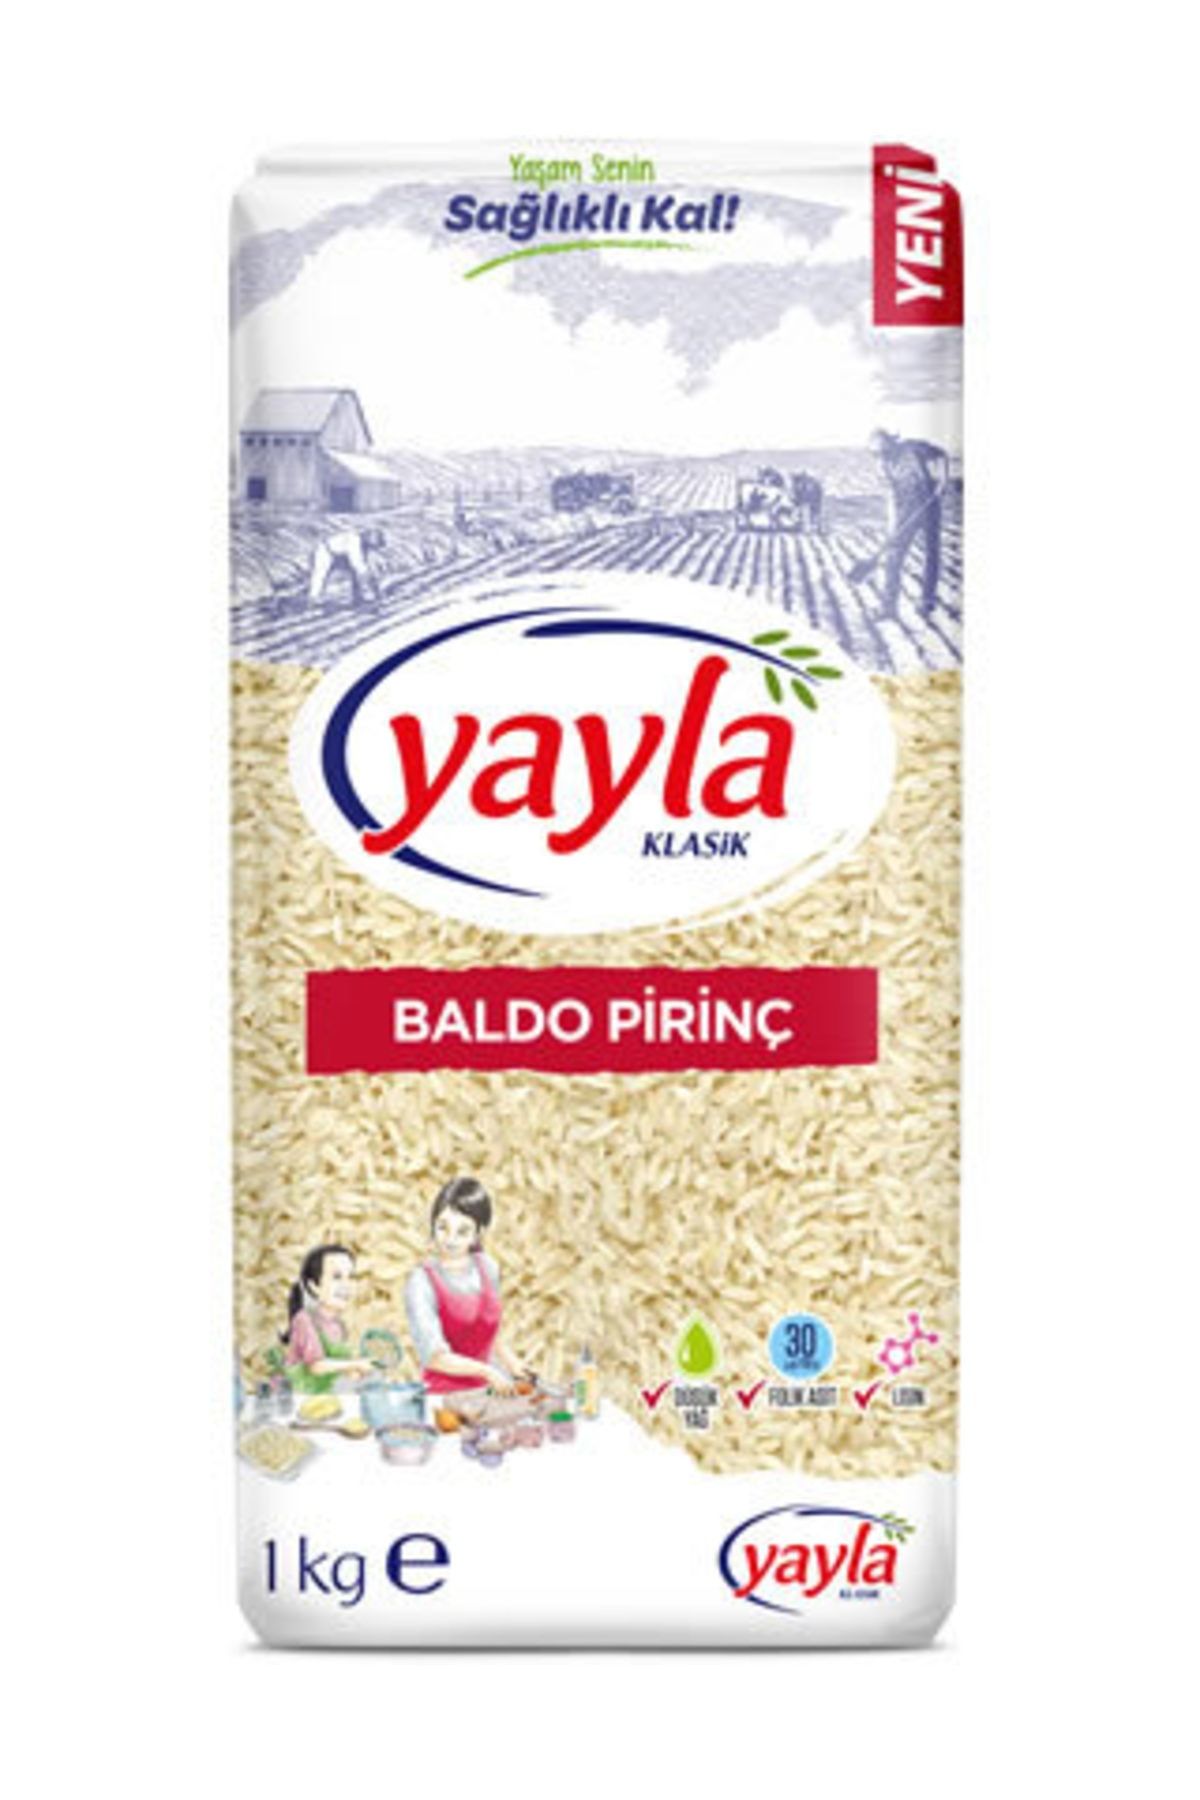 Yayla Baldo Pirinç 1 kg Gönen Bölgesi Mahsulü